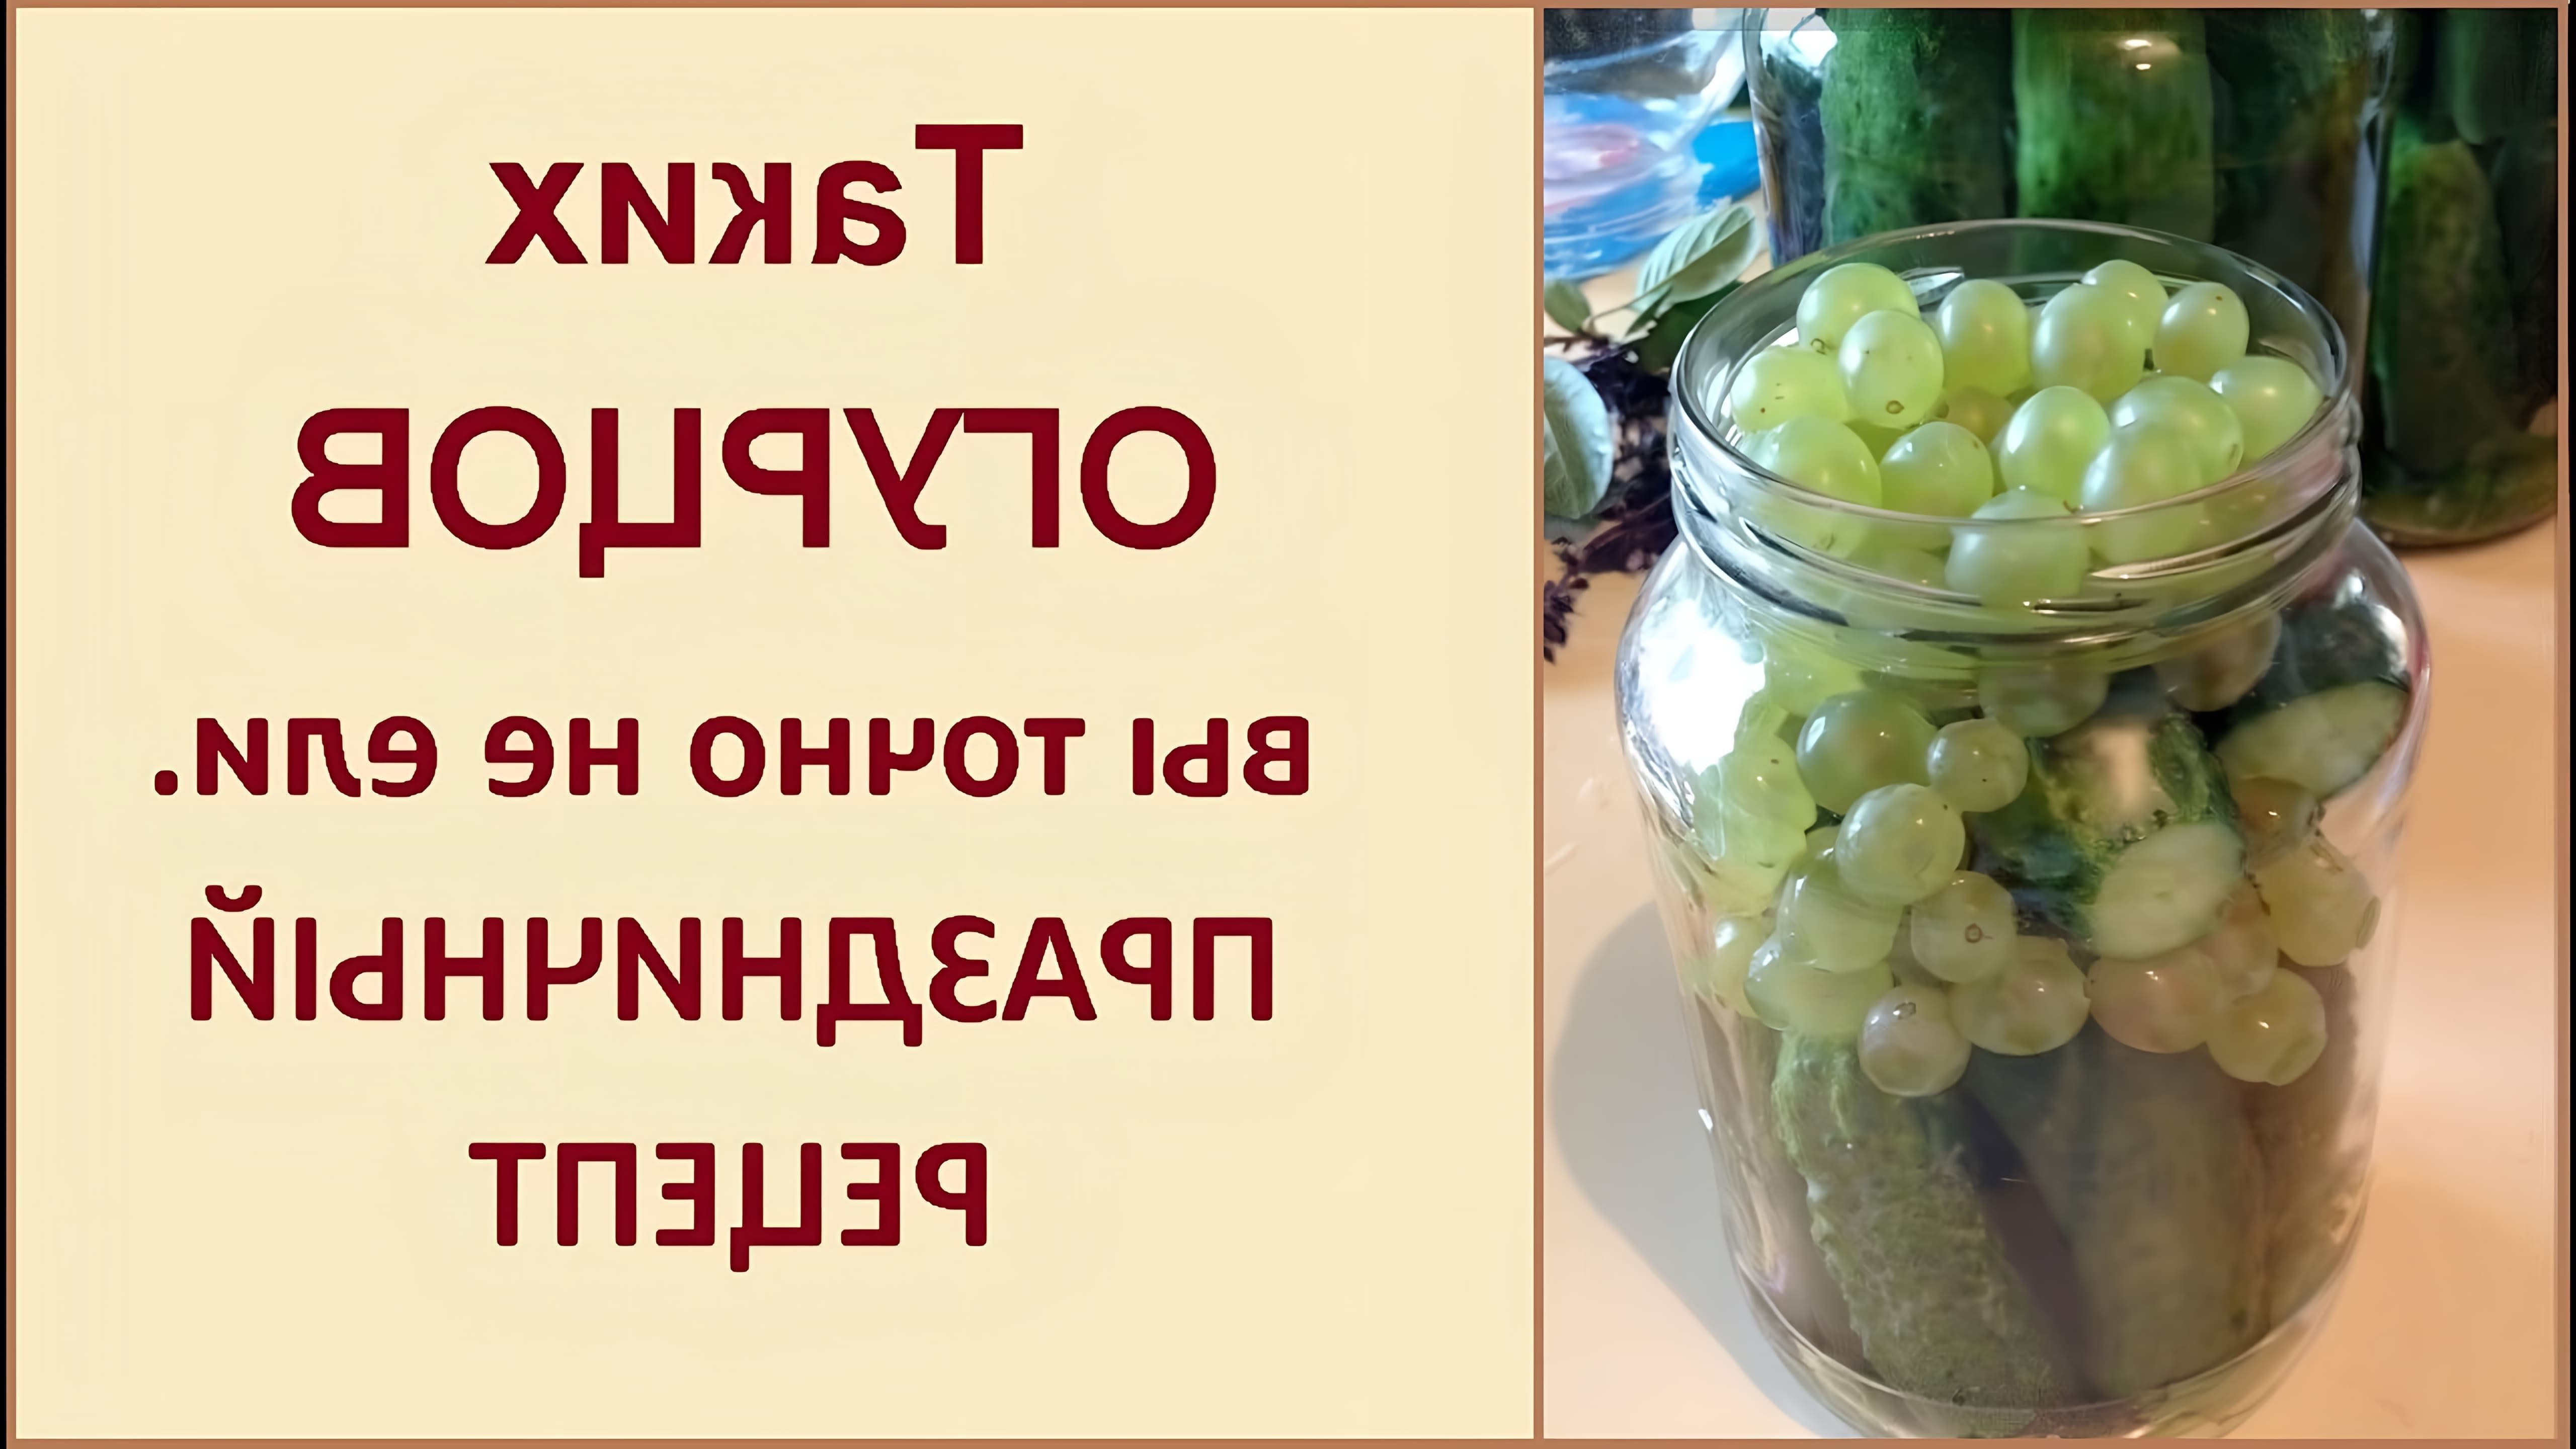 В этом видео демонстрируется рецепт маринованных огурцов с виноградом